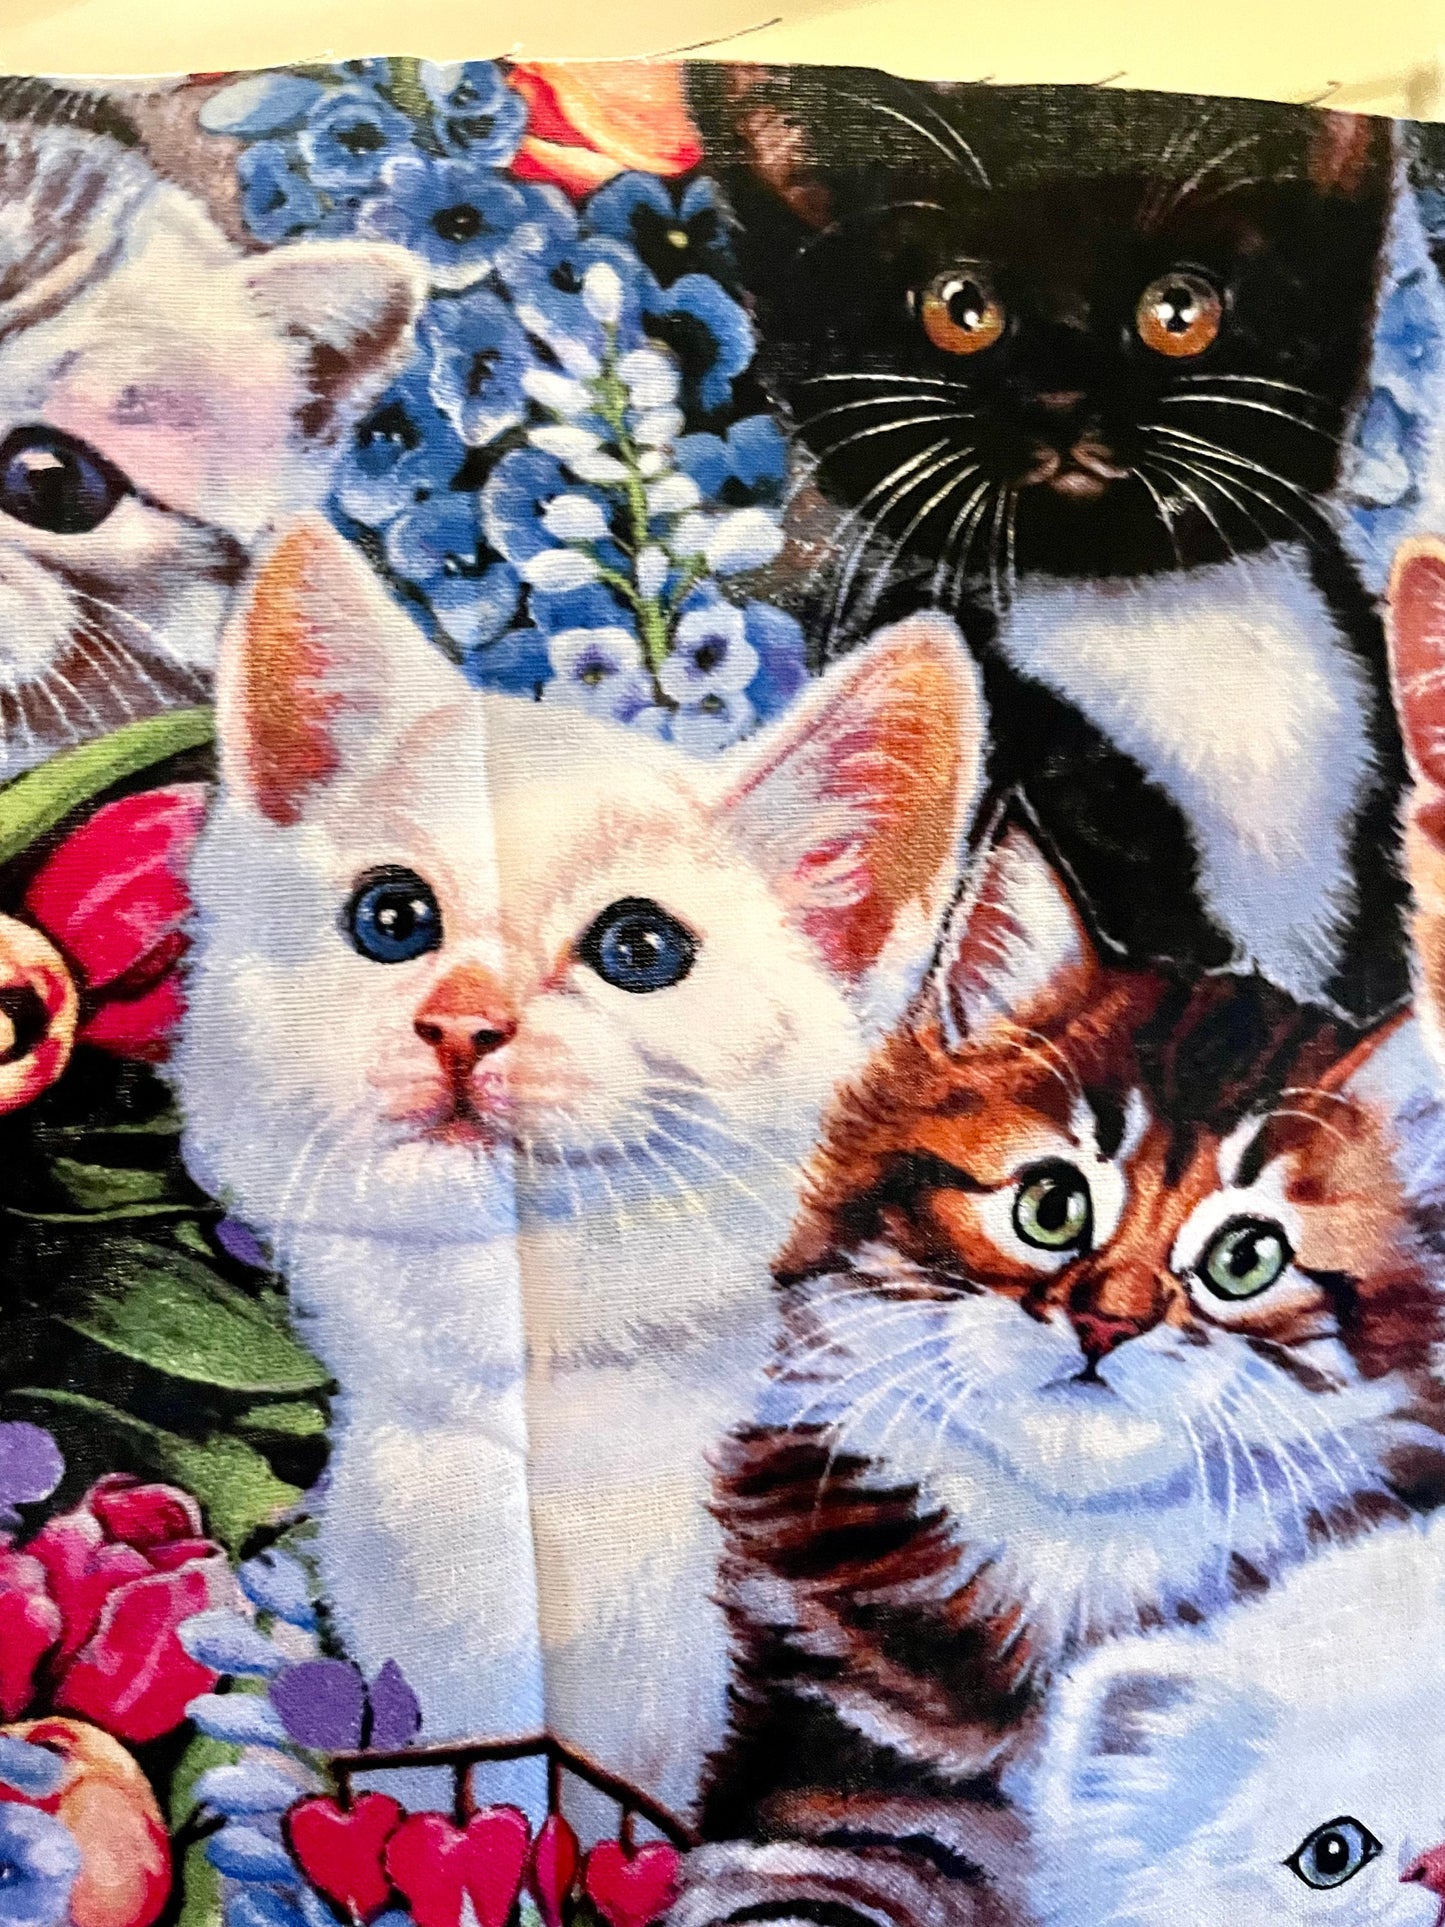 Best Cat and kitten lover blanket ever!